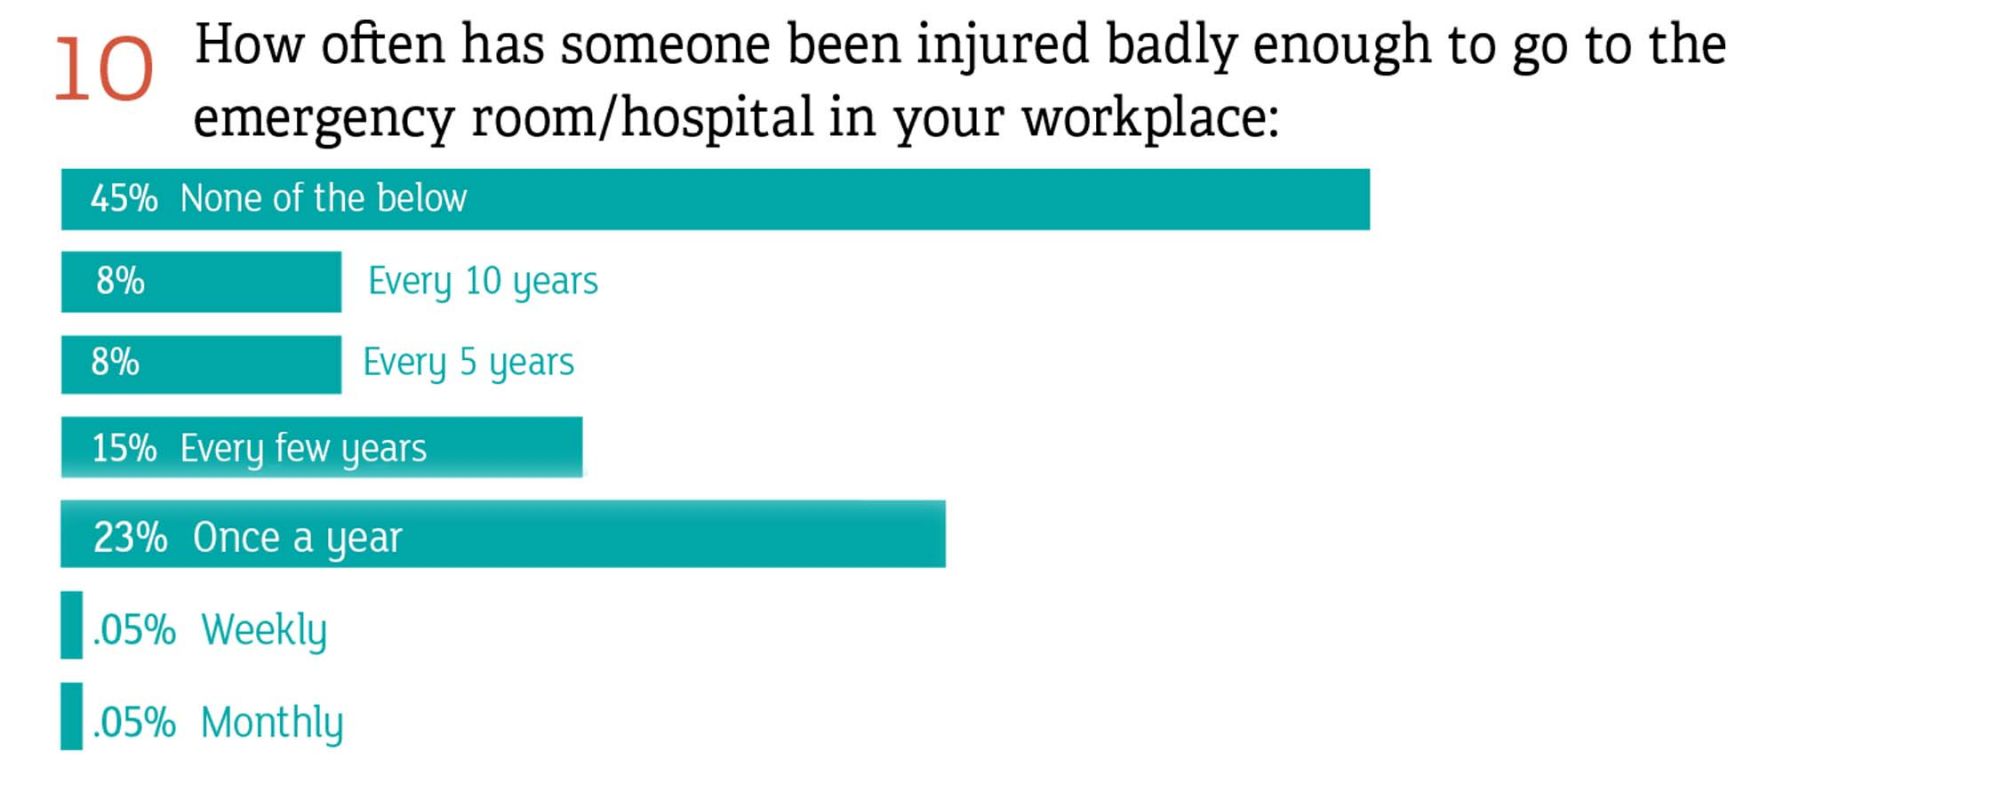 多久有人受伤严重到足以去医院急诊室/在你的工作场所吗?